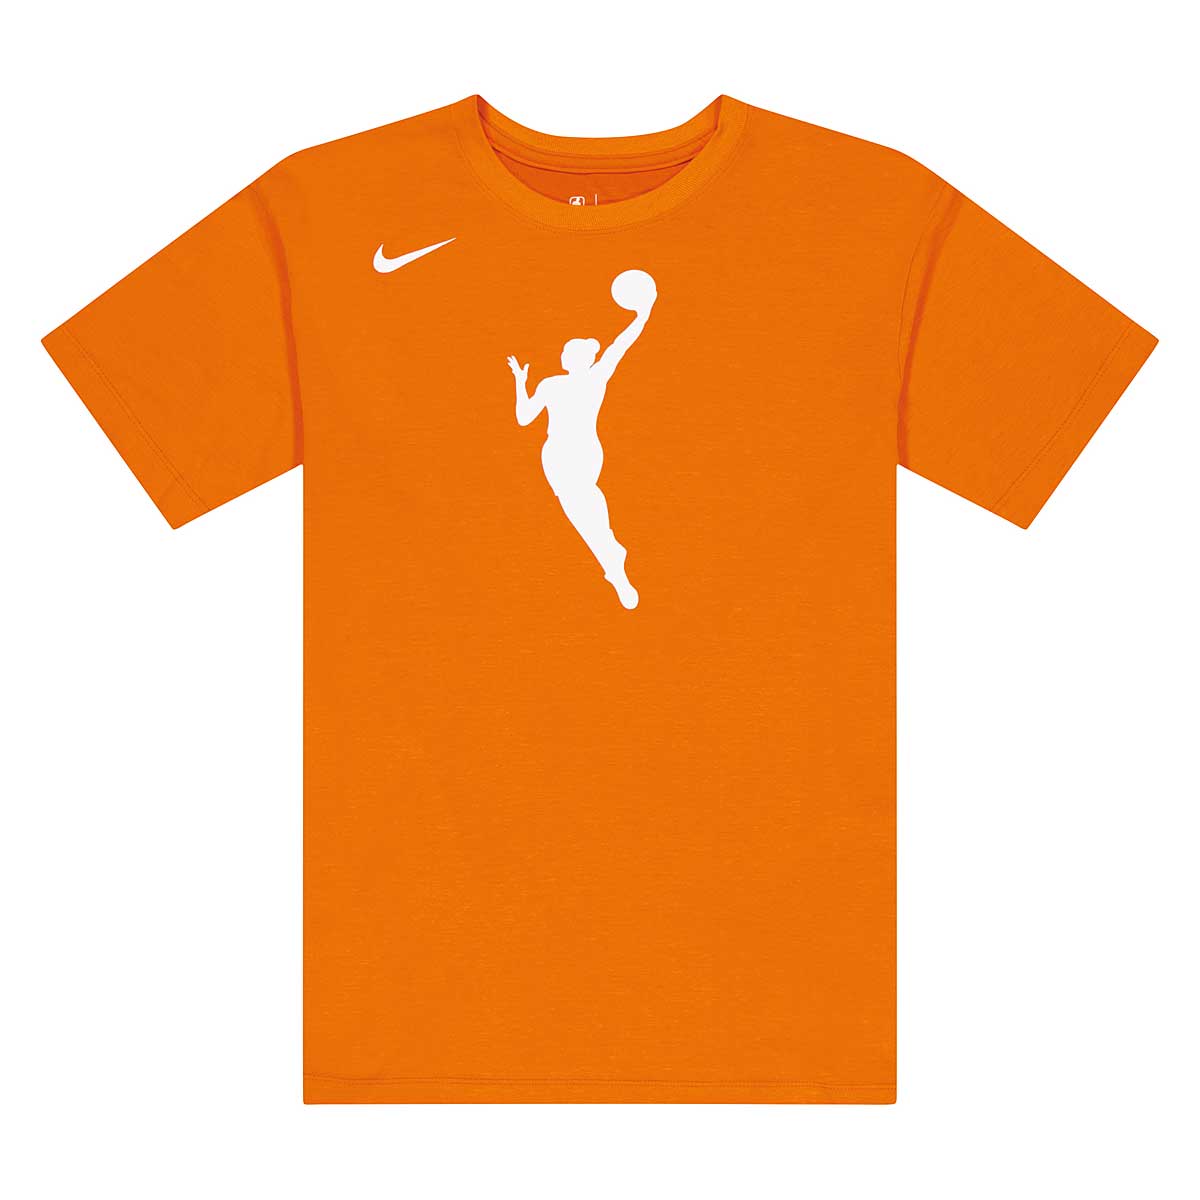 Cálculo enseñar la licenciatura Compre WNBA U Dri-Fit TEAM 13 T-Shirt por EUR 19.99 en KICKZ.com!